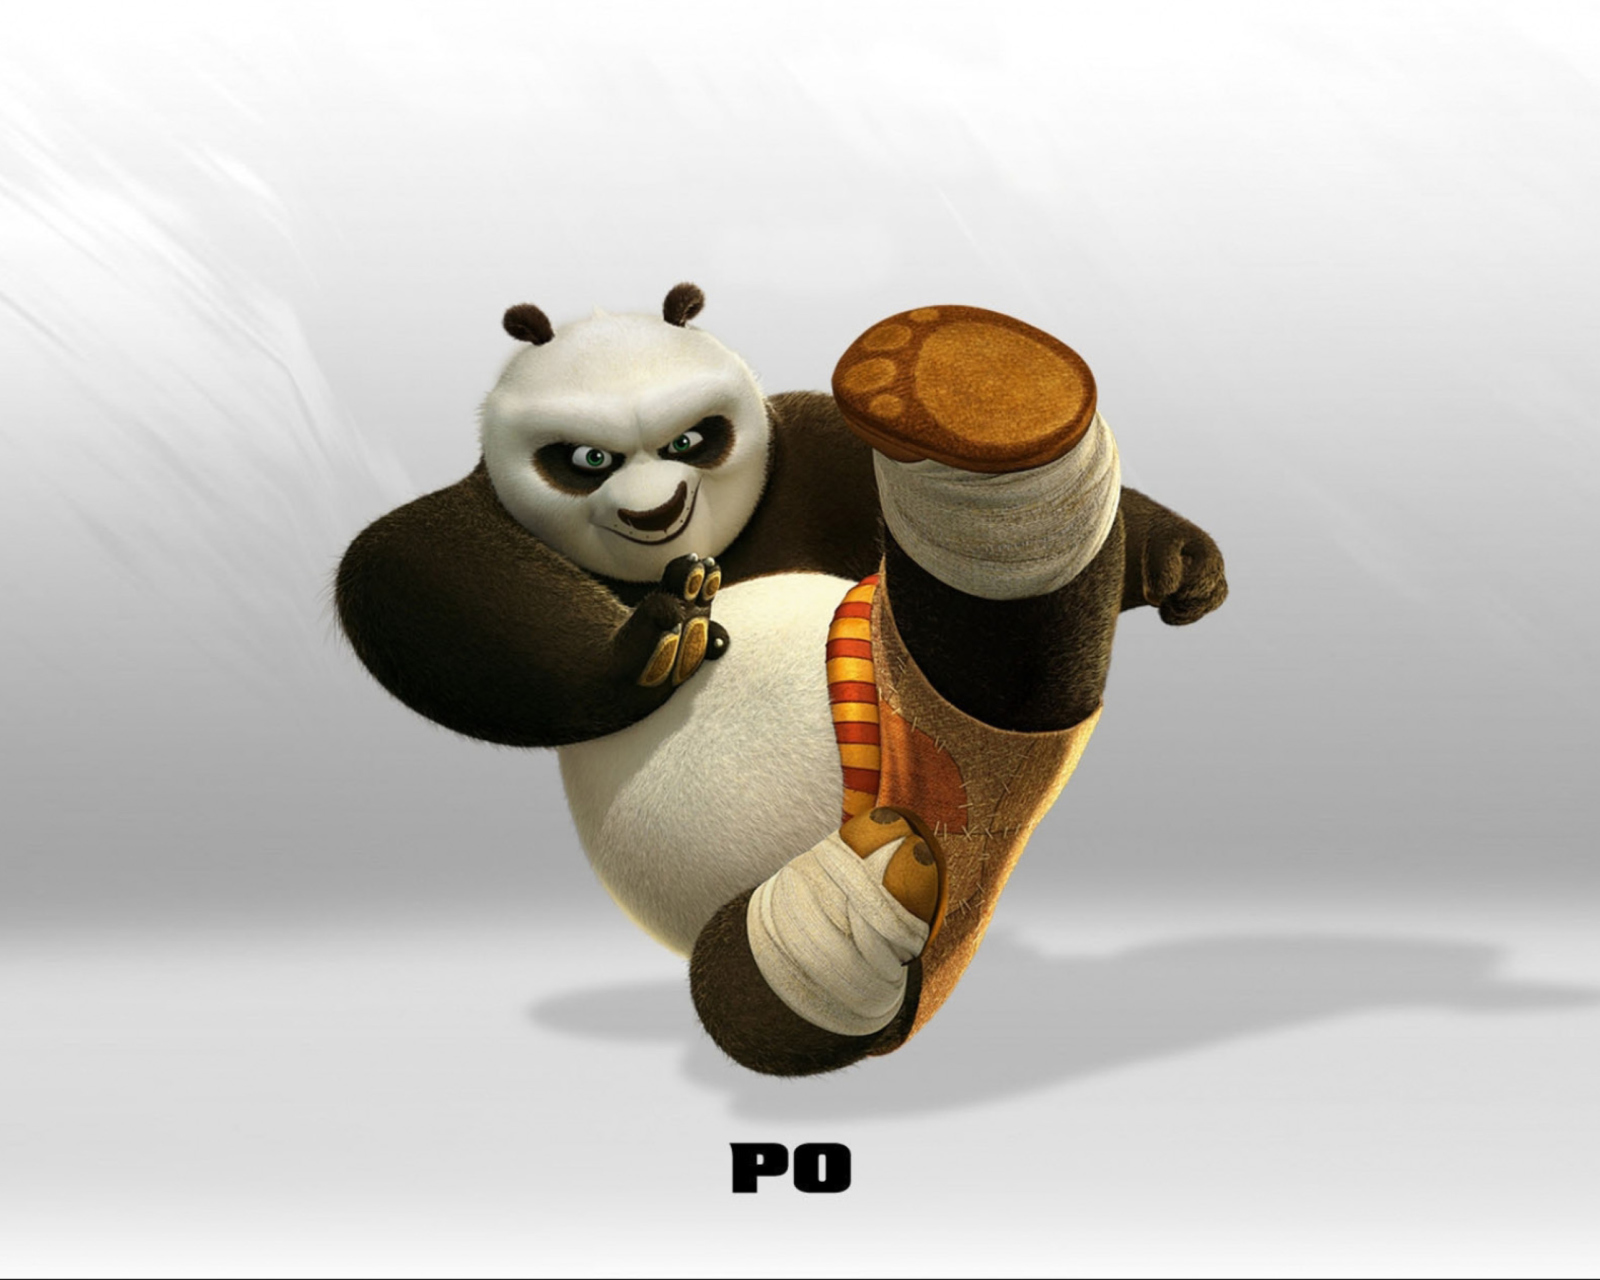 Kung Fu Panda screenshot #1 1600x1280